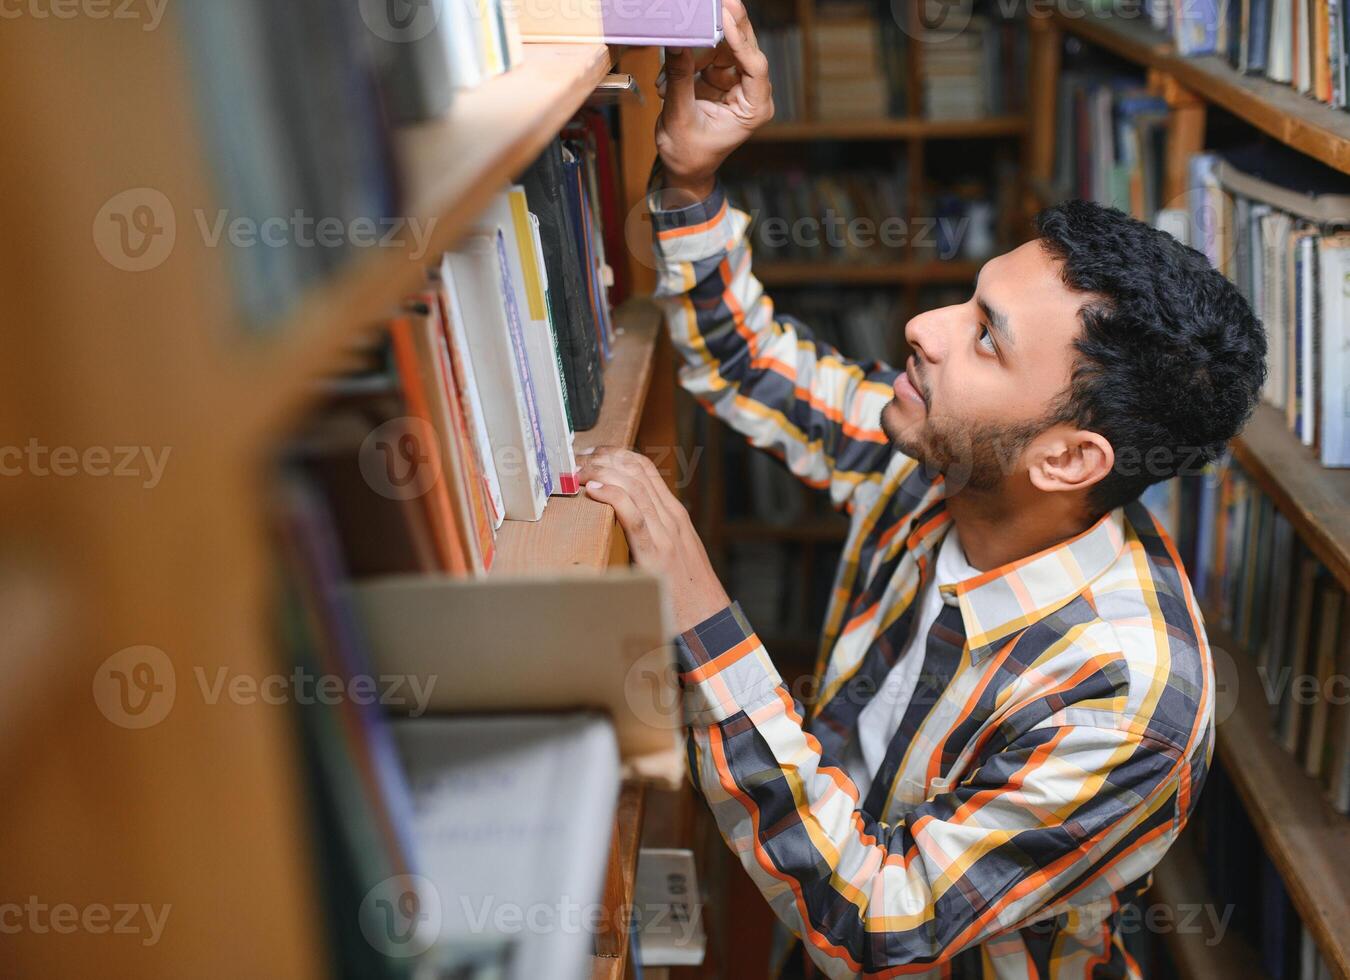 content intelligent Indien ou arabe gars, mixte course homme, Université étudiant, dans le bibliothèque photo